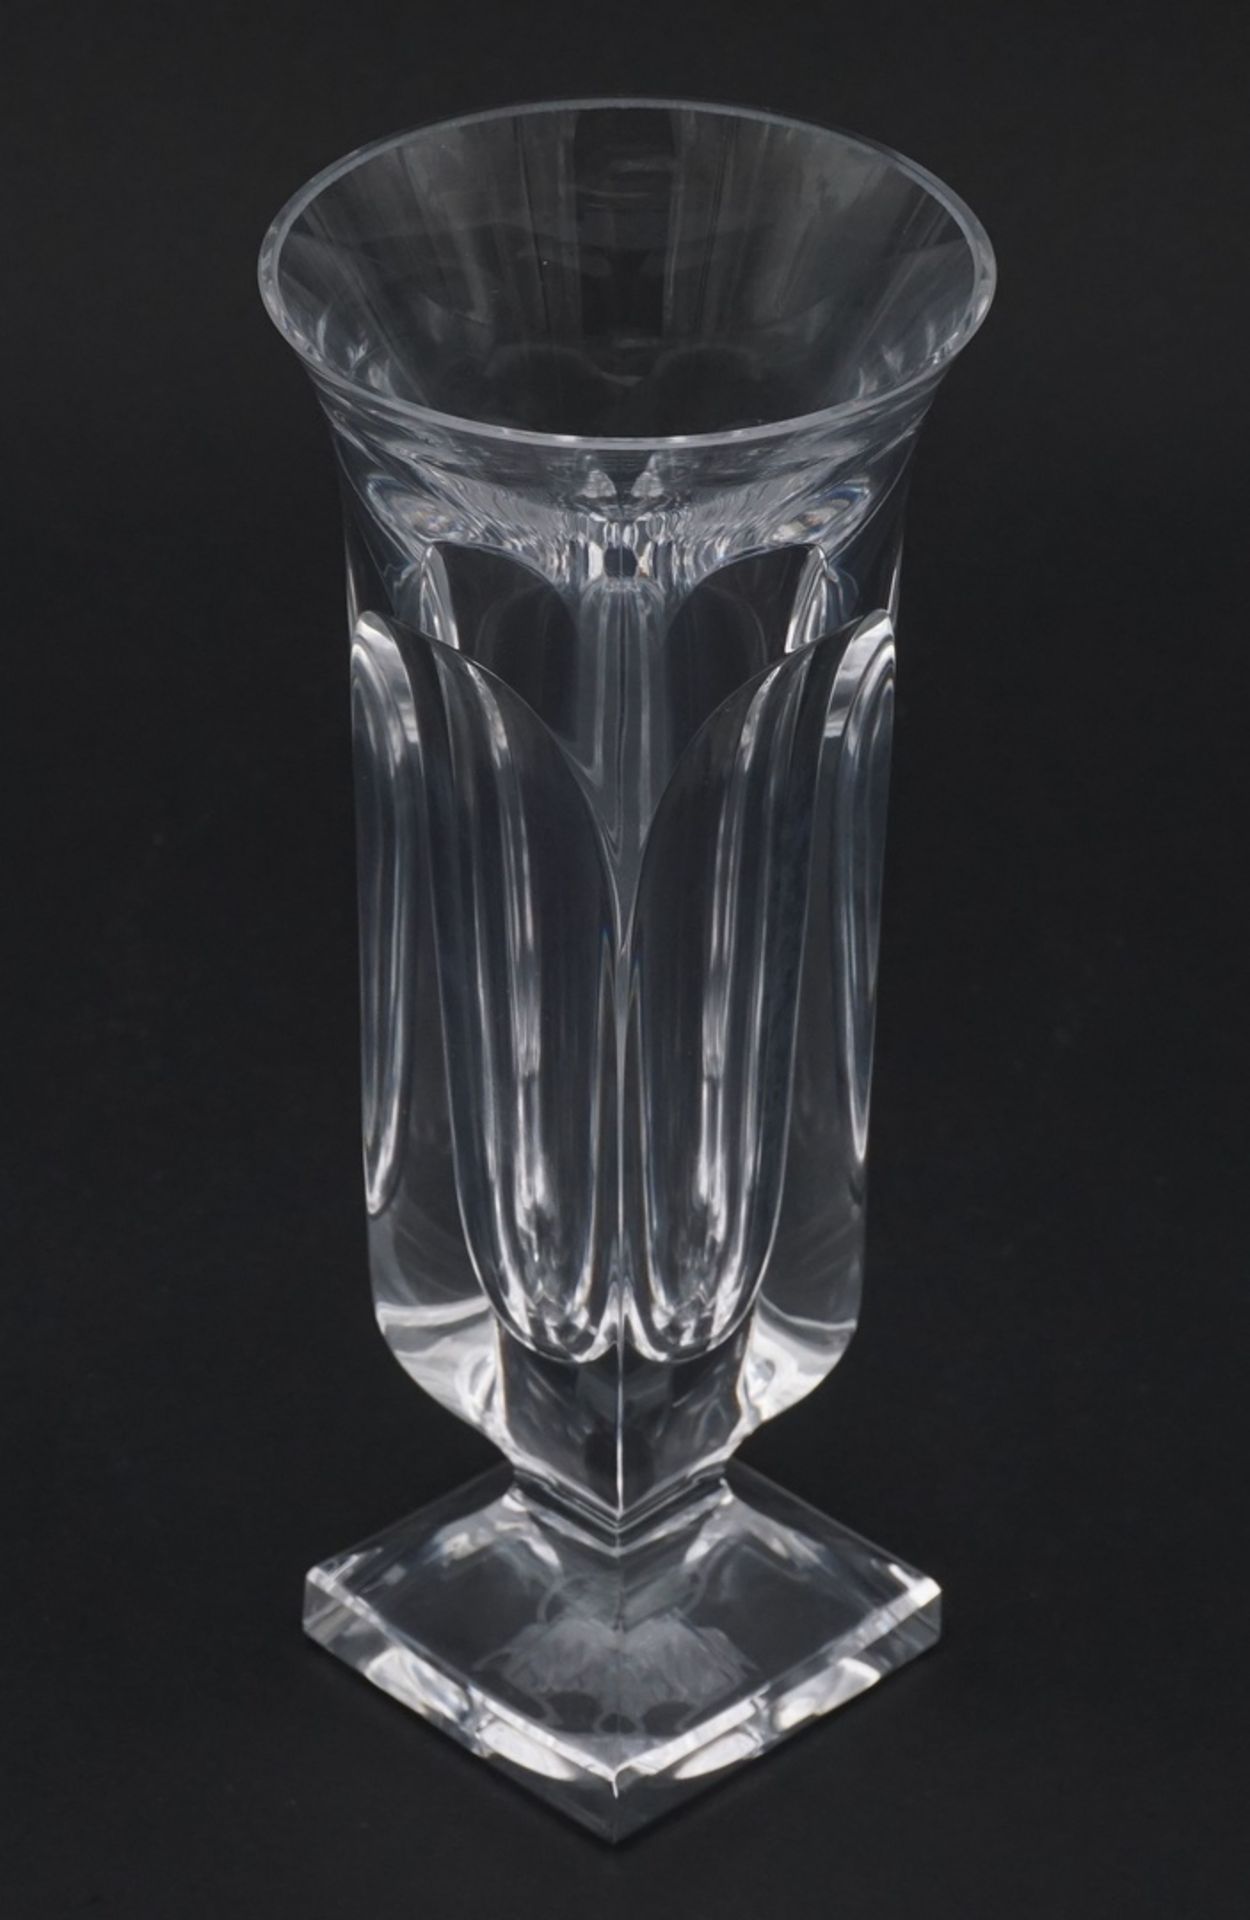 Drei kleine Moser Vasen, 2. Hälfte 20. Jh.Kristallglas, im Boden Ätzmarke des Herstellers Moser, - Bild 2 aus 3